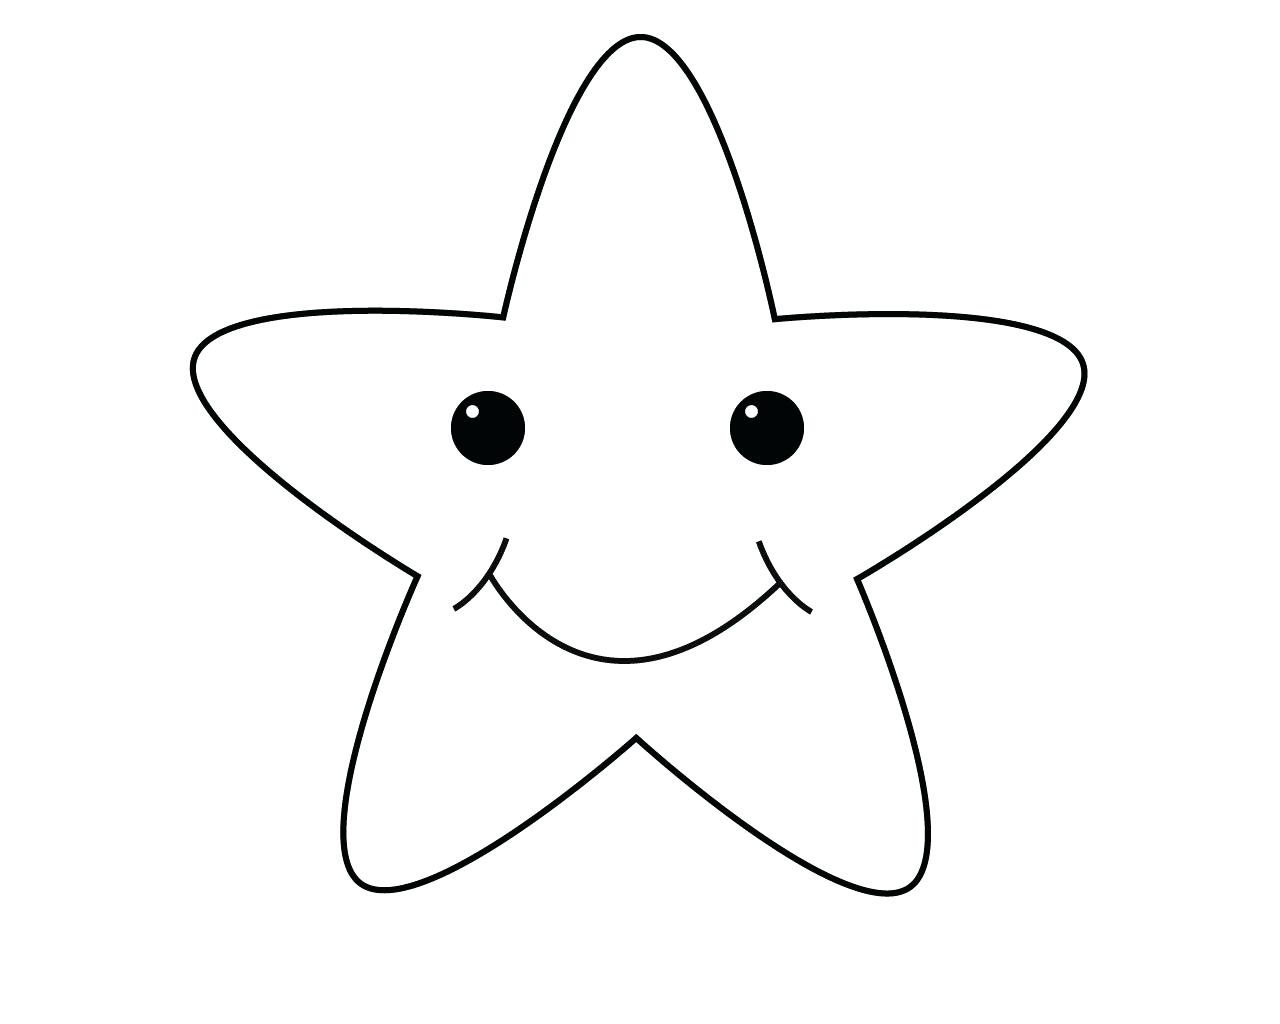 Vẽ Ngôi sao đơn giản và tô màu cầu vồng cho bé  Dạy bé tô màu  Pelangi  Bintang Halaman Mewarnai  YouTube